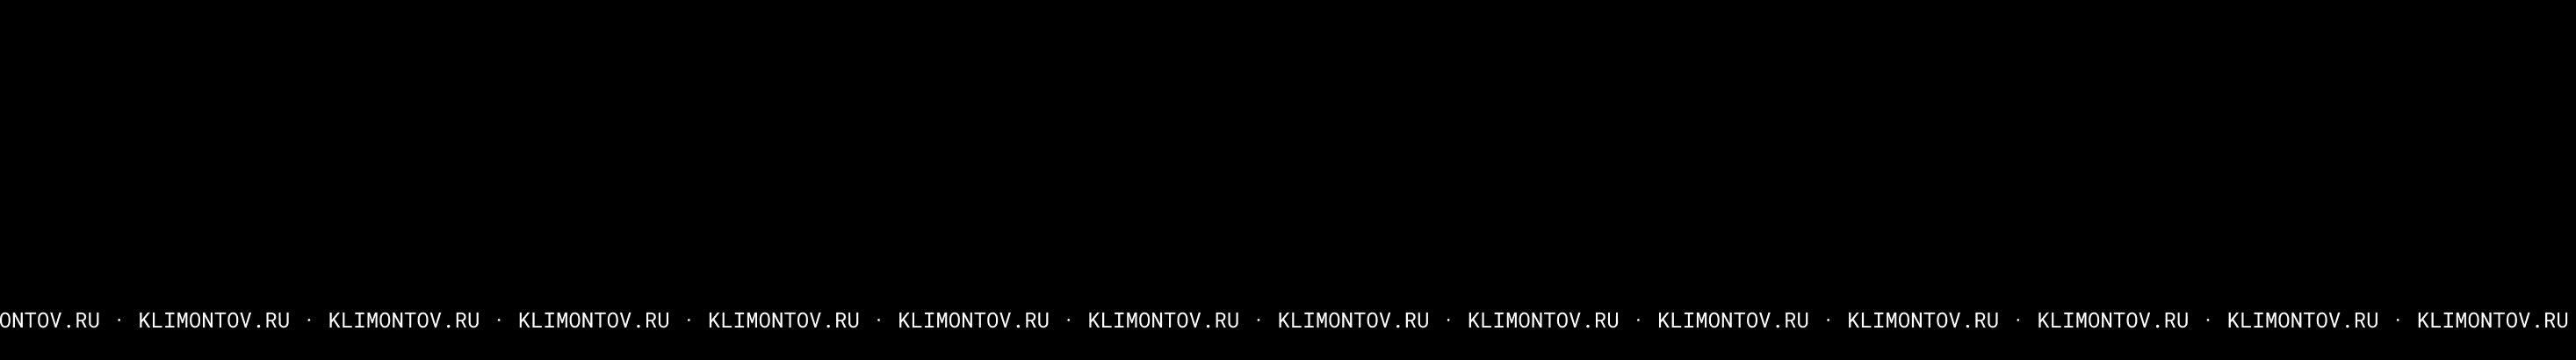 Денис Климонтов's profile banner